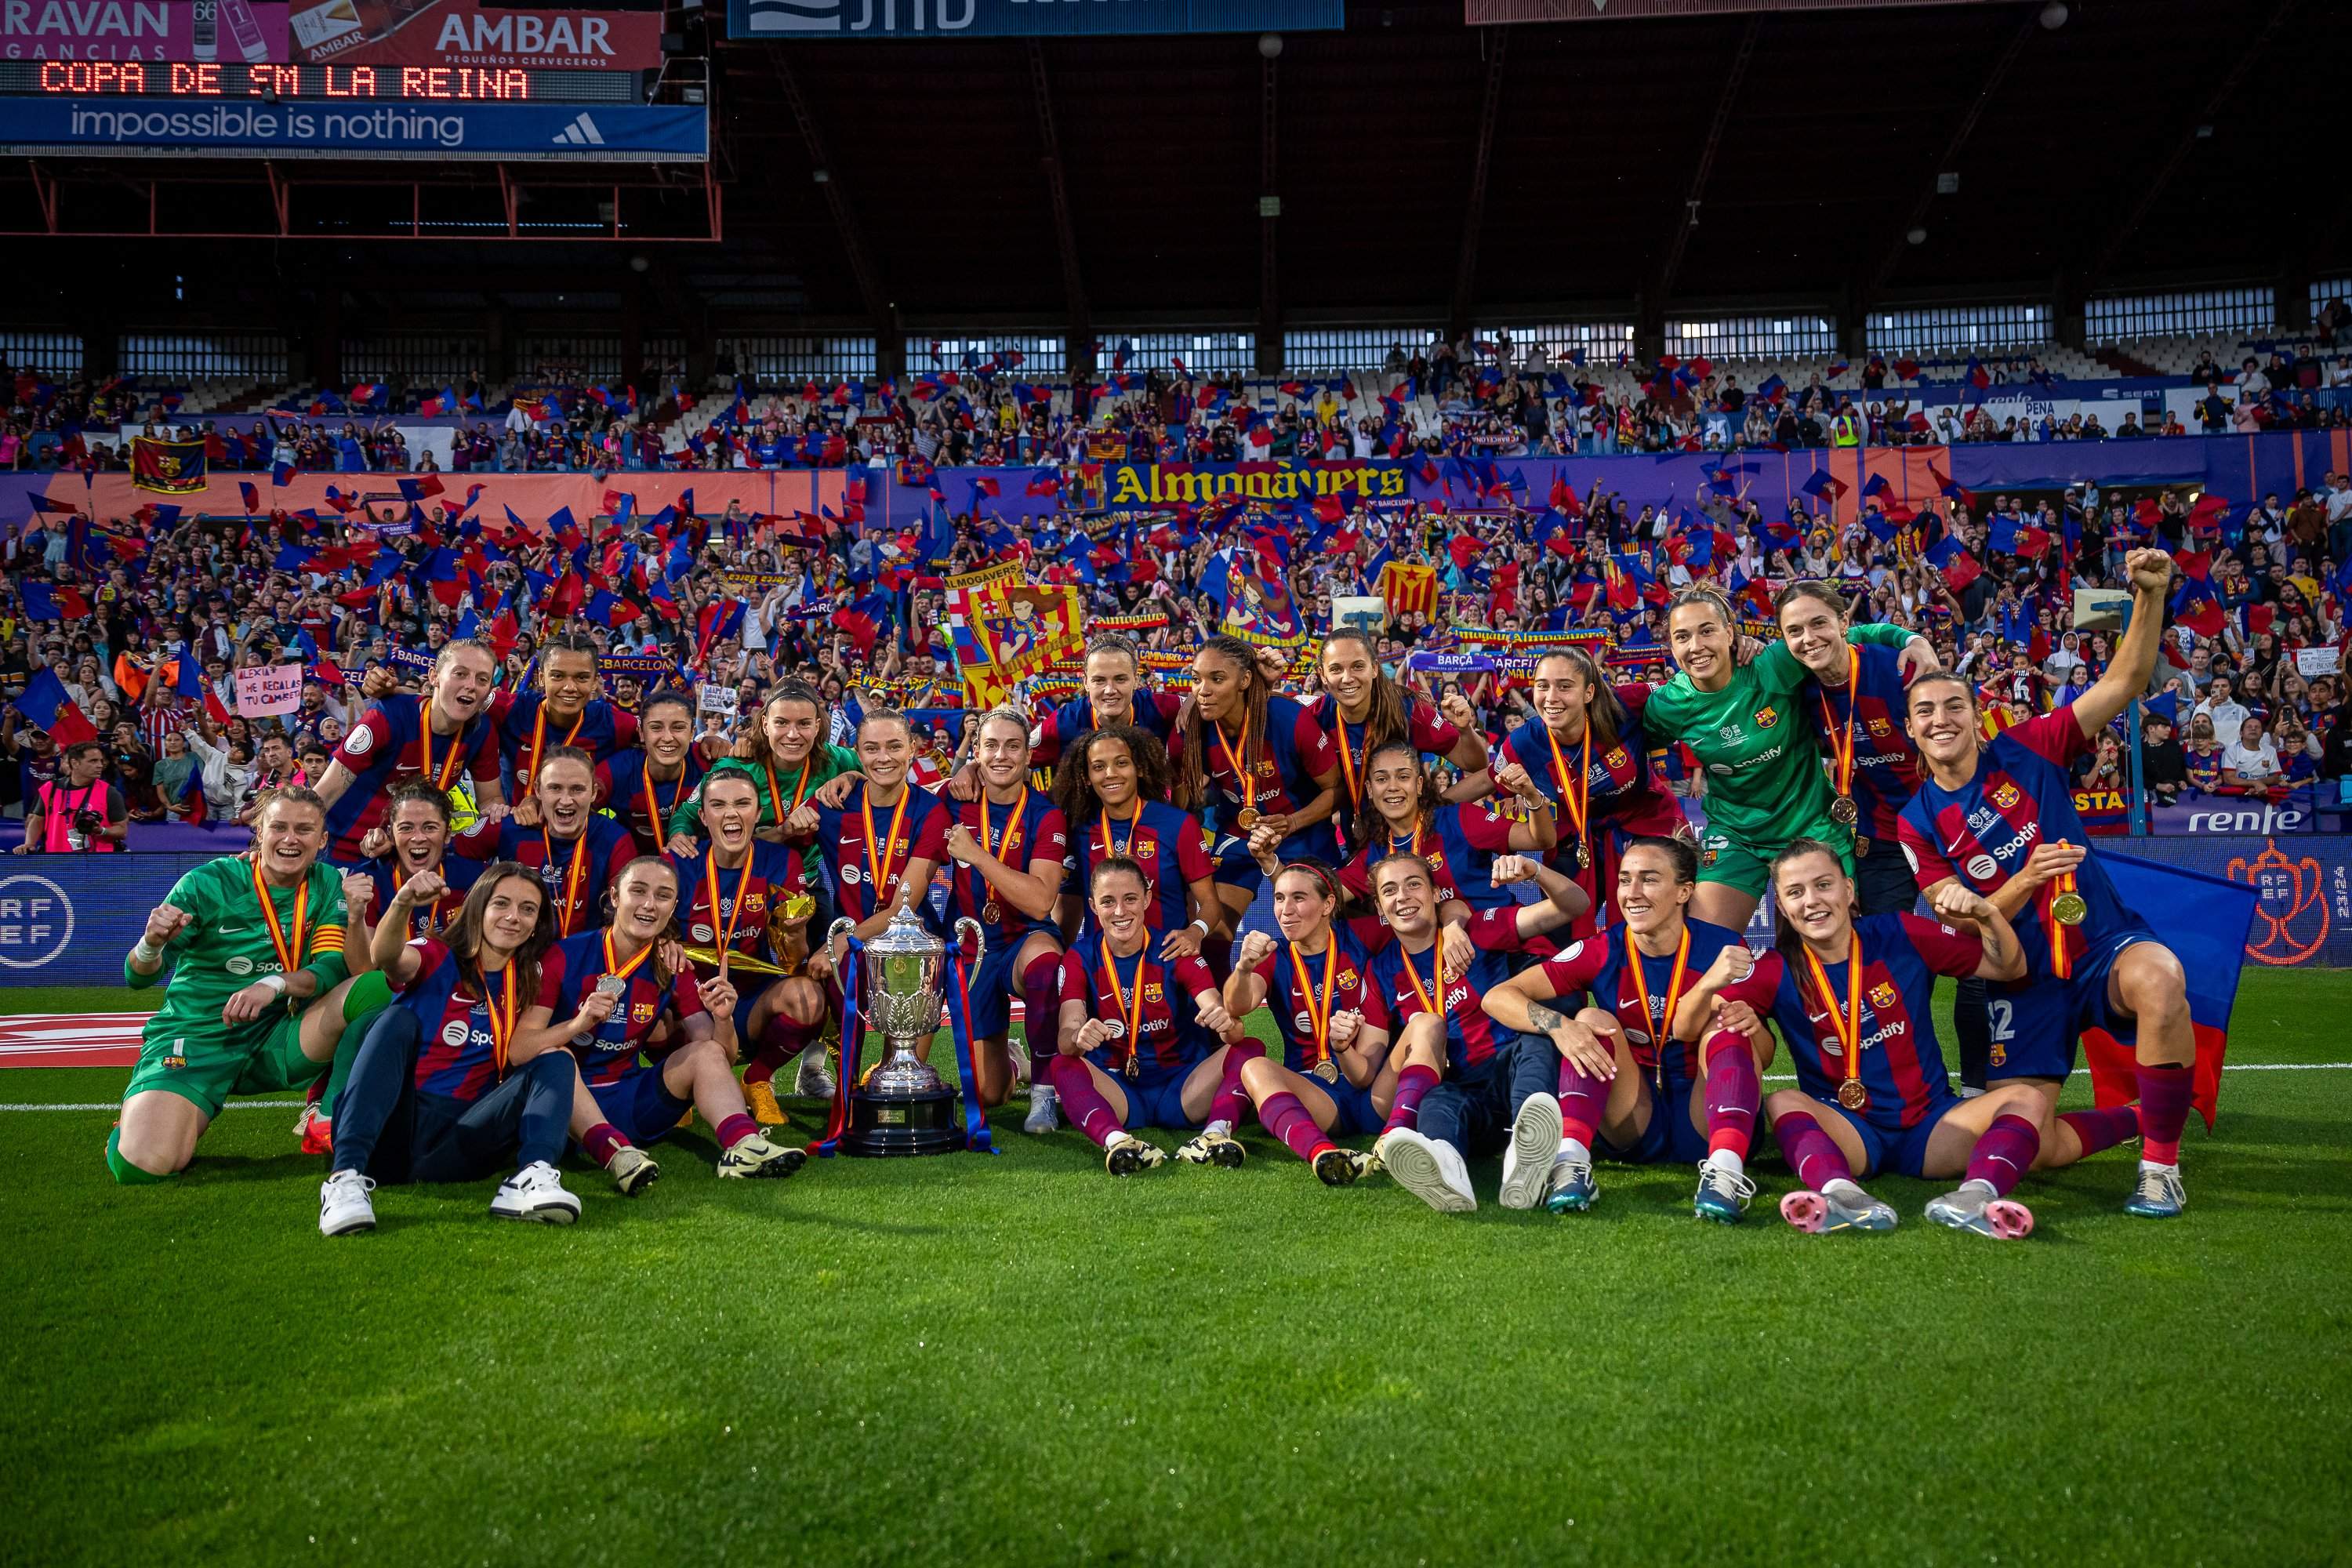 La 10.ª Copa de la Reina del Barça: un legado empezado hace 30 años